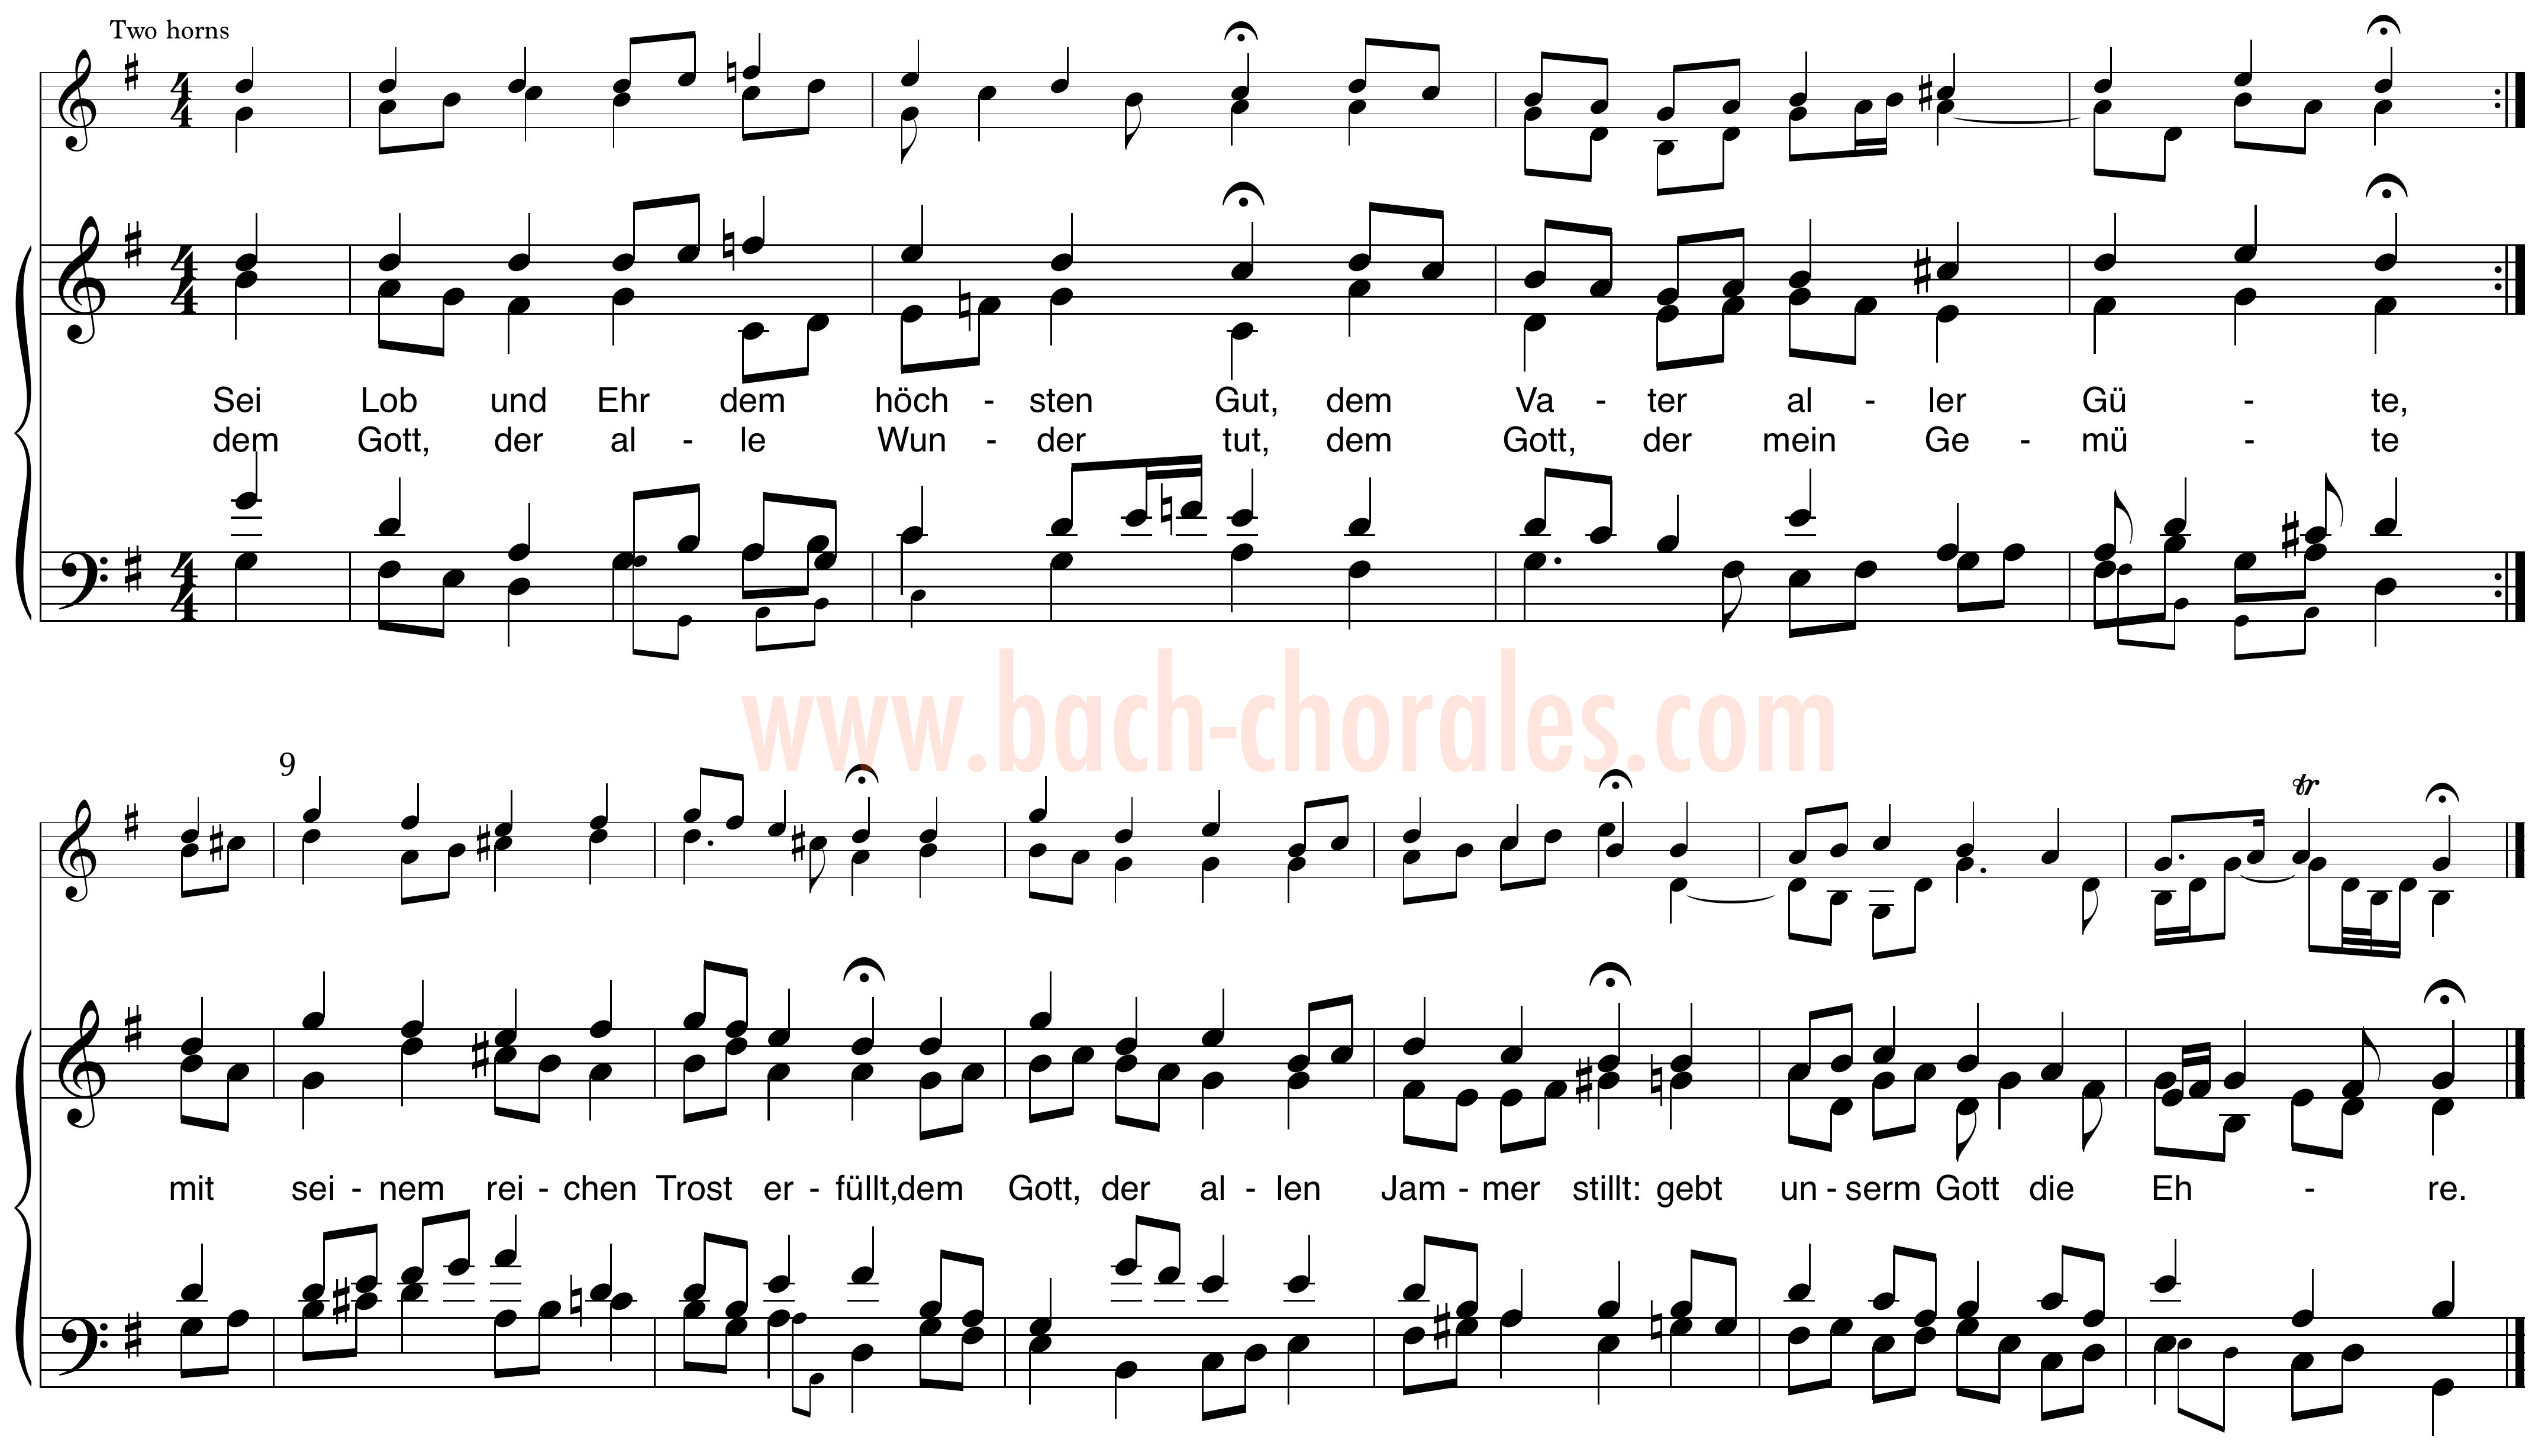 notenbeeld BWV 251 op https://www.bach-chorales.com/